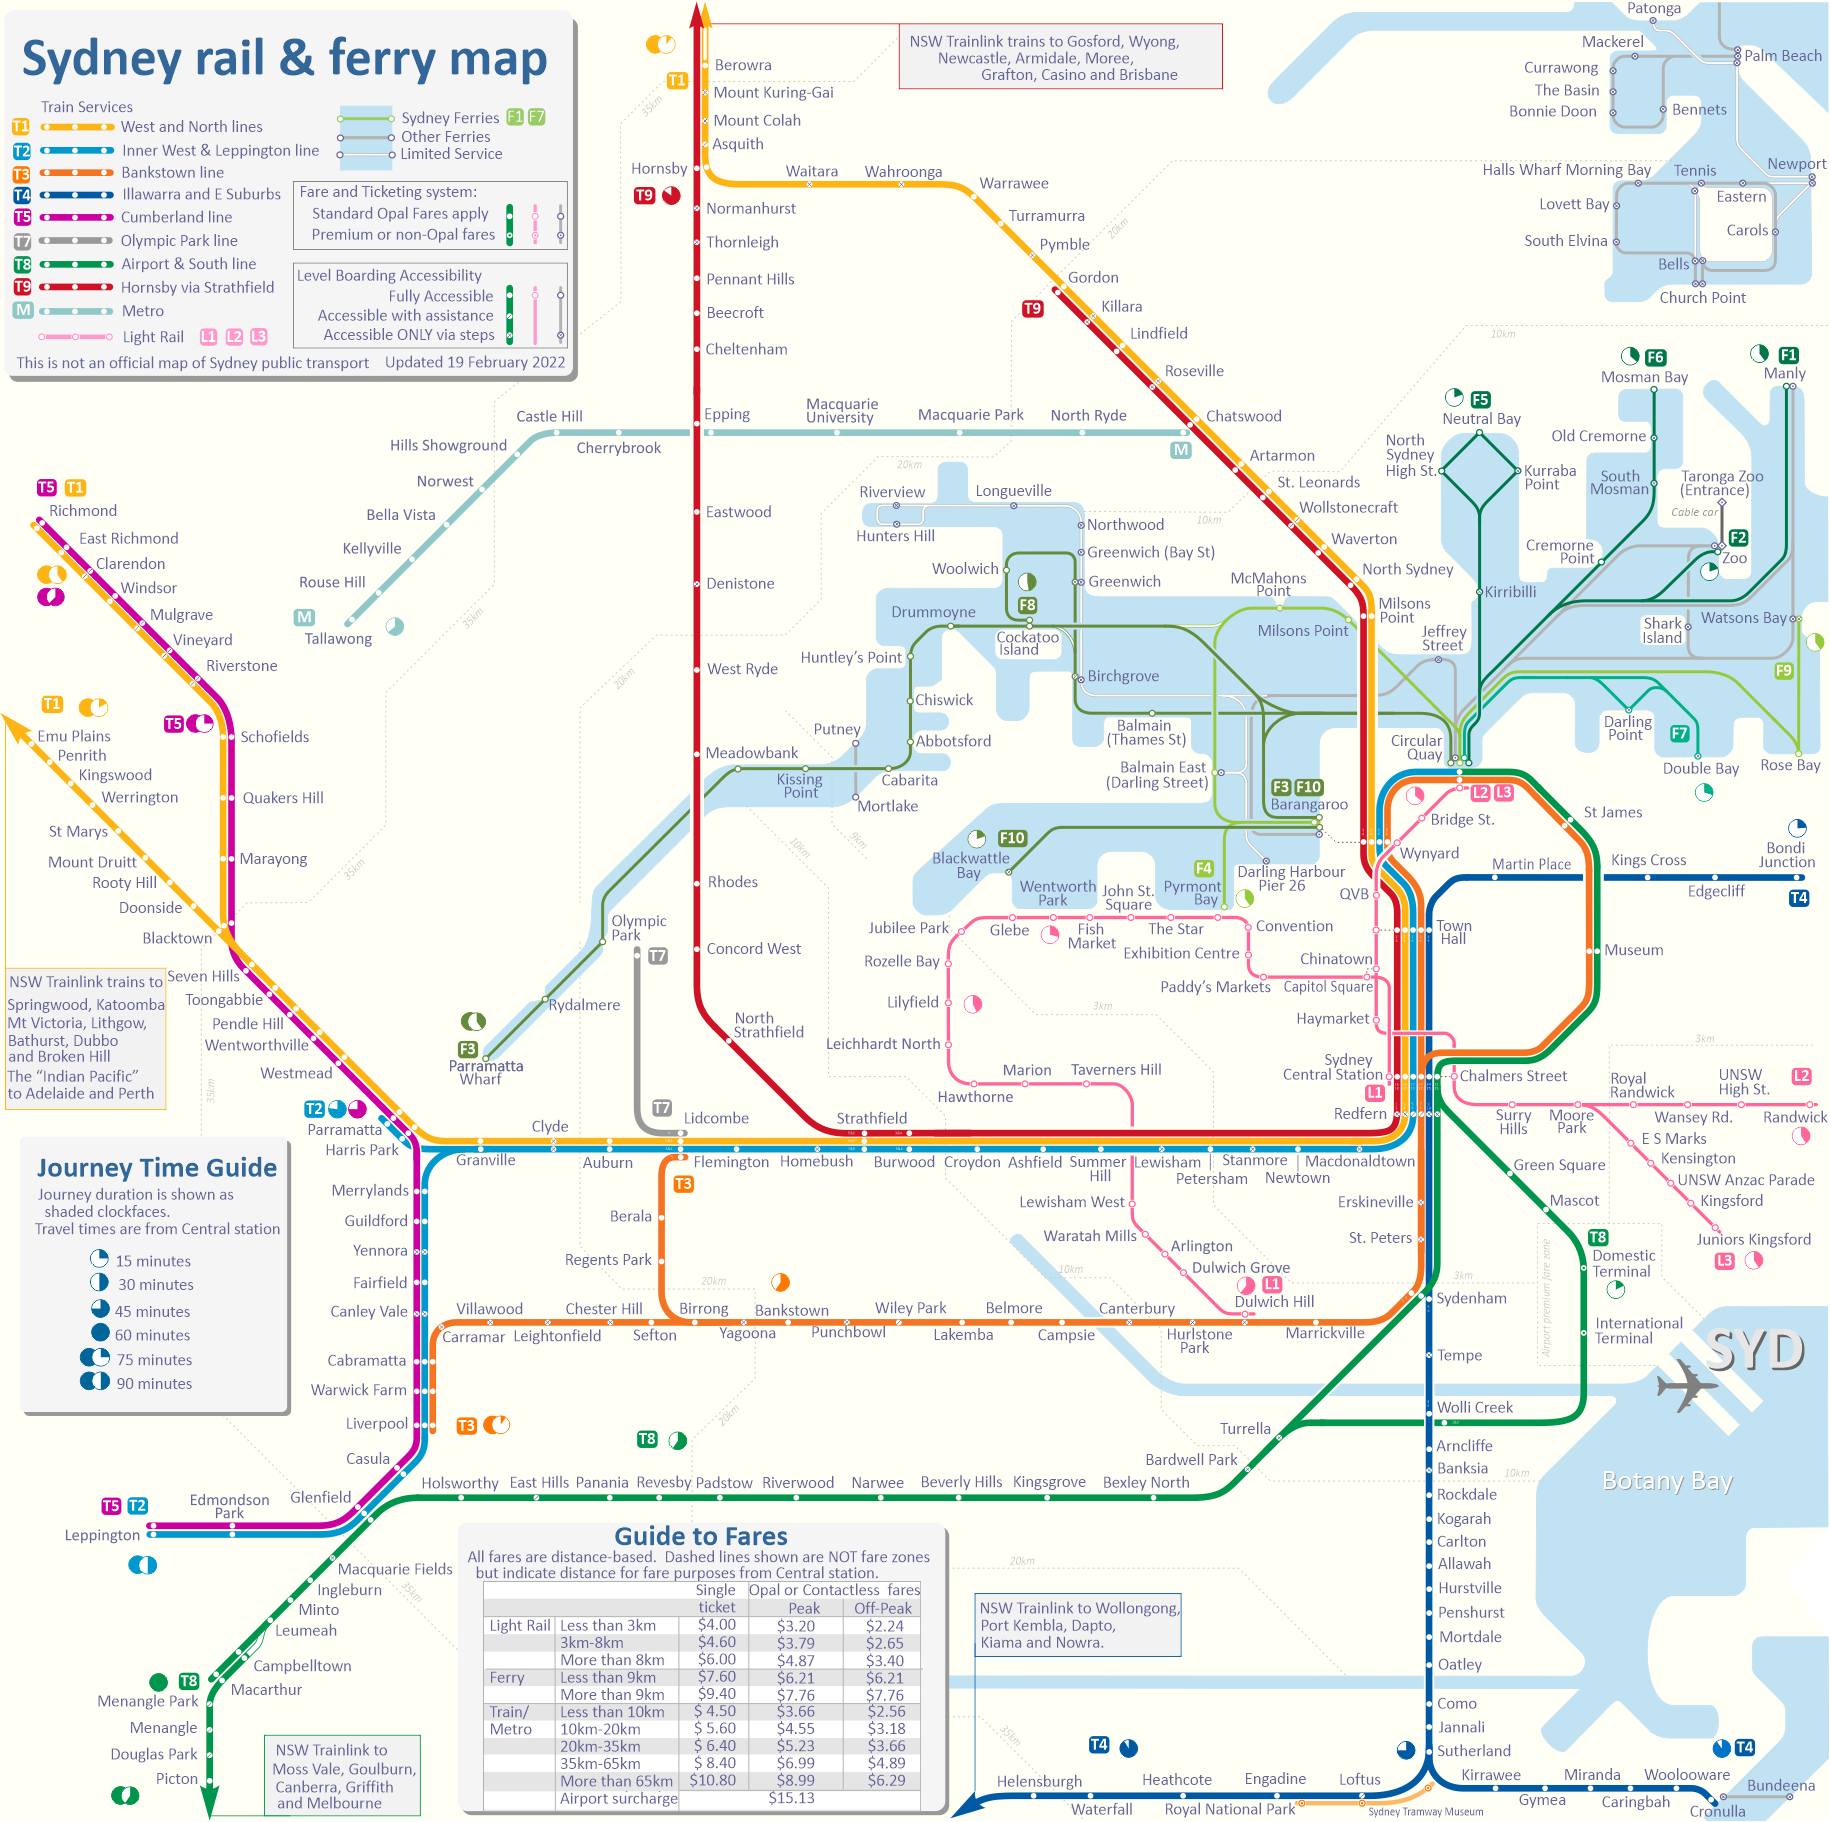 sydney train network map Sydney Train Map sydney train network map